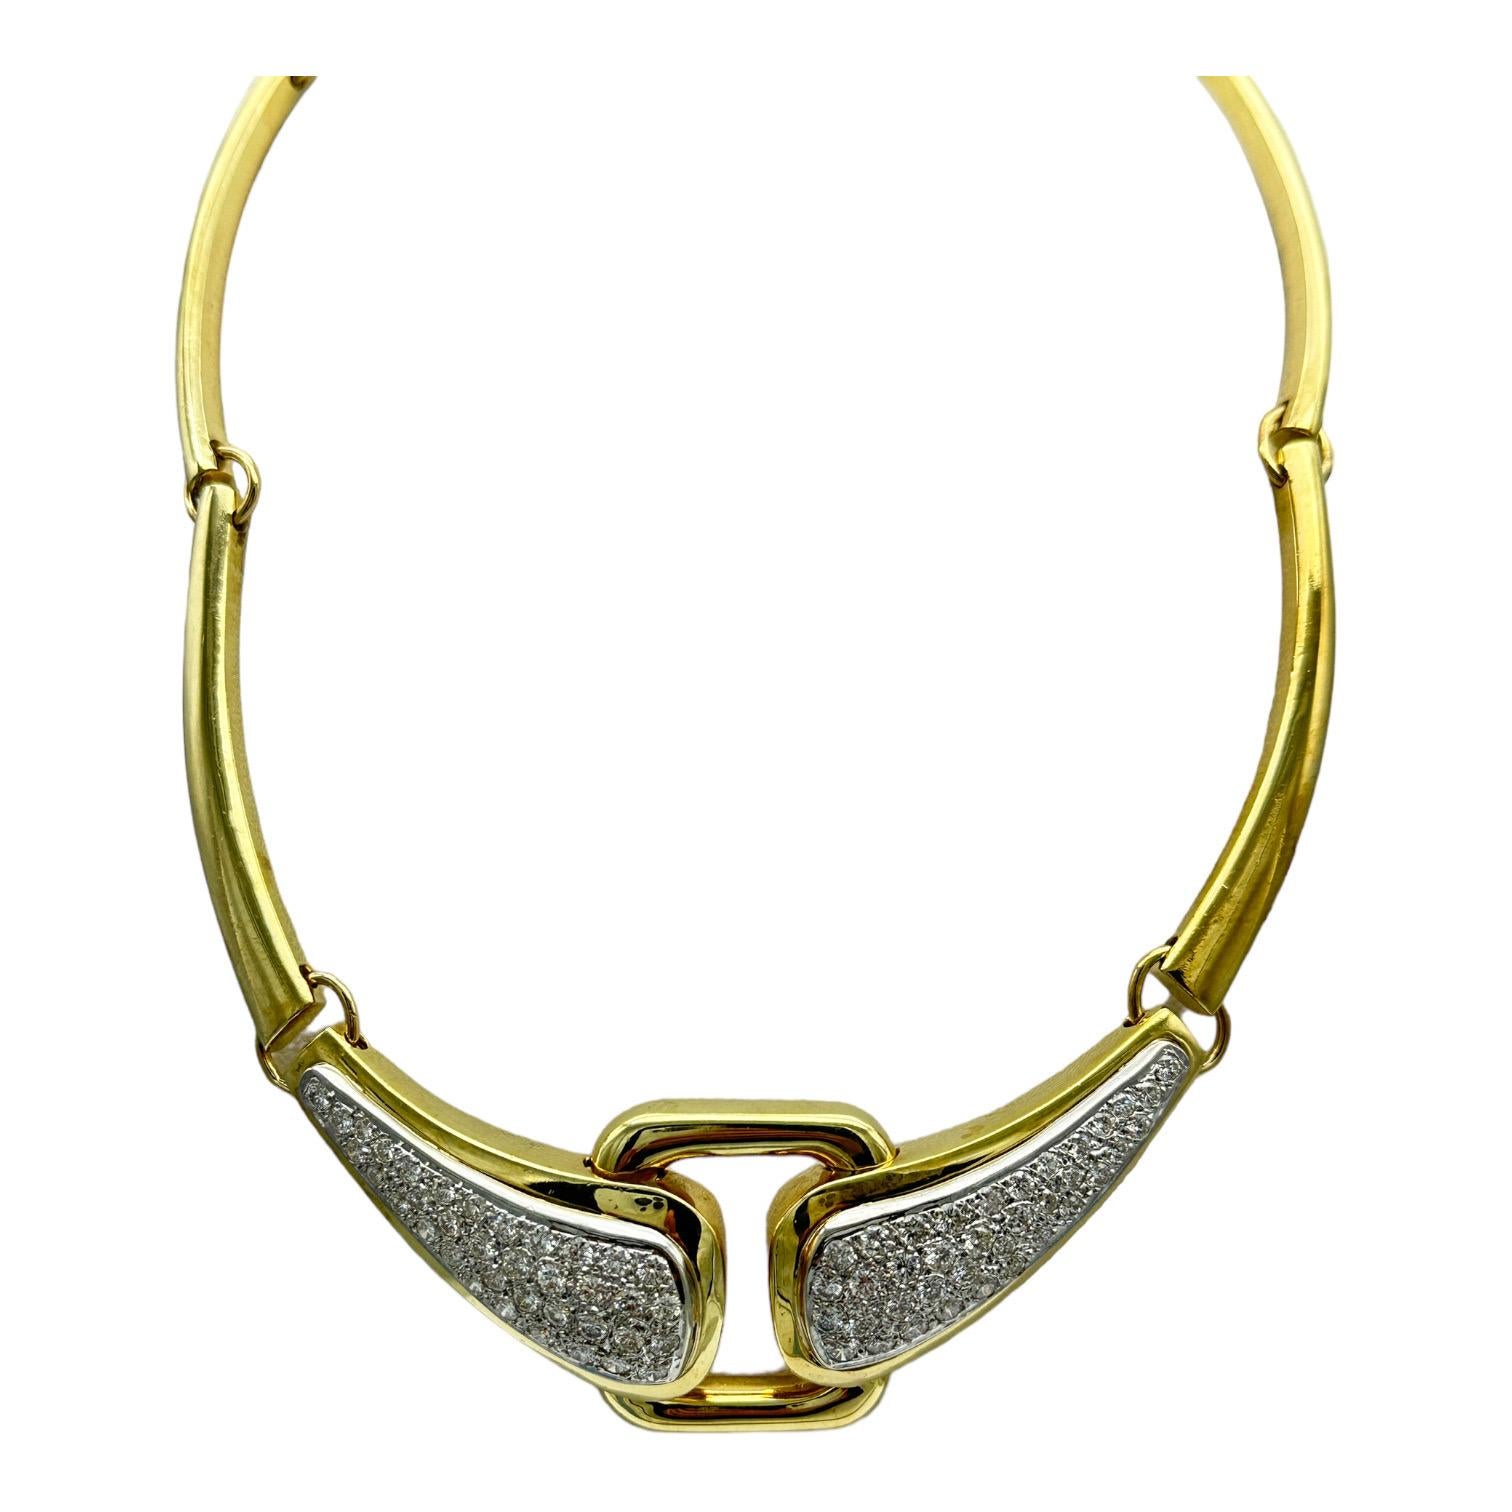 Réalisé en or jaune 18 carats, ce superbe collier ras-de-cou est orné d'un pavé de diamants de 6,00 carats. Élevez n'importe quel ensemble avec l'équilibre parfait du luxe et de l'élégance. La longueur est de 15,5 pouces, idéale pour un collier